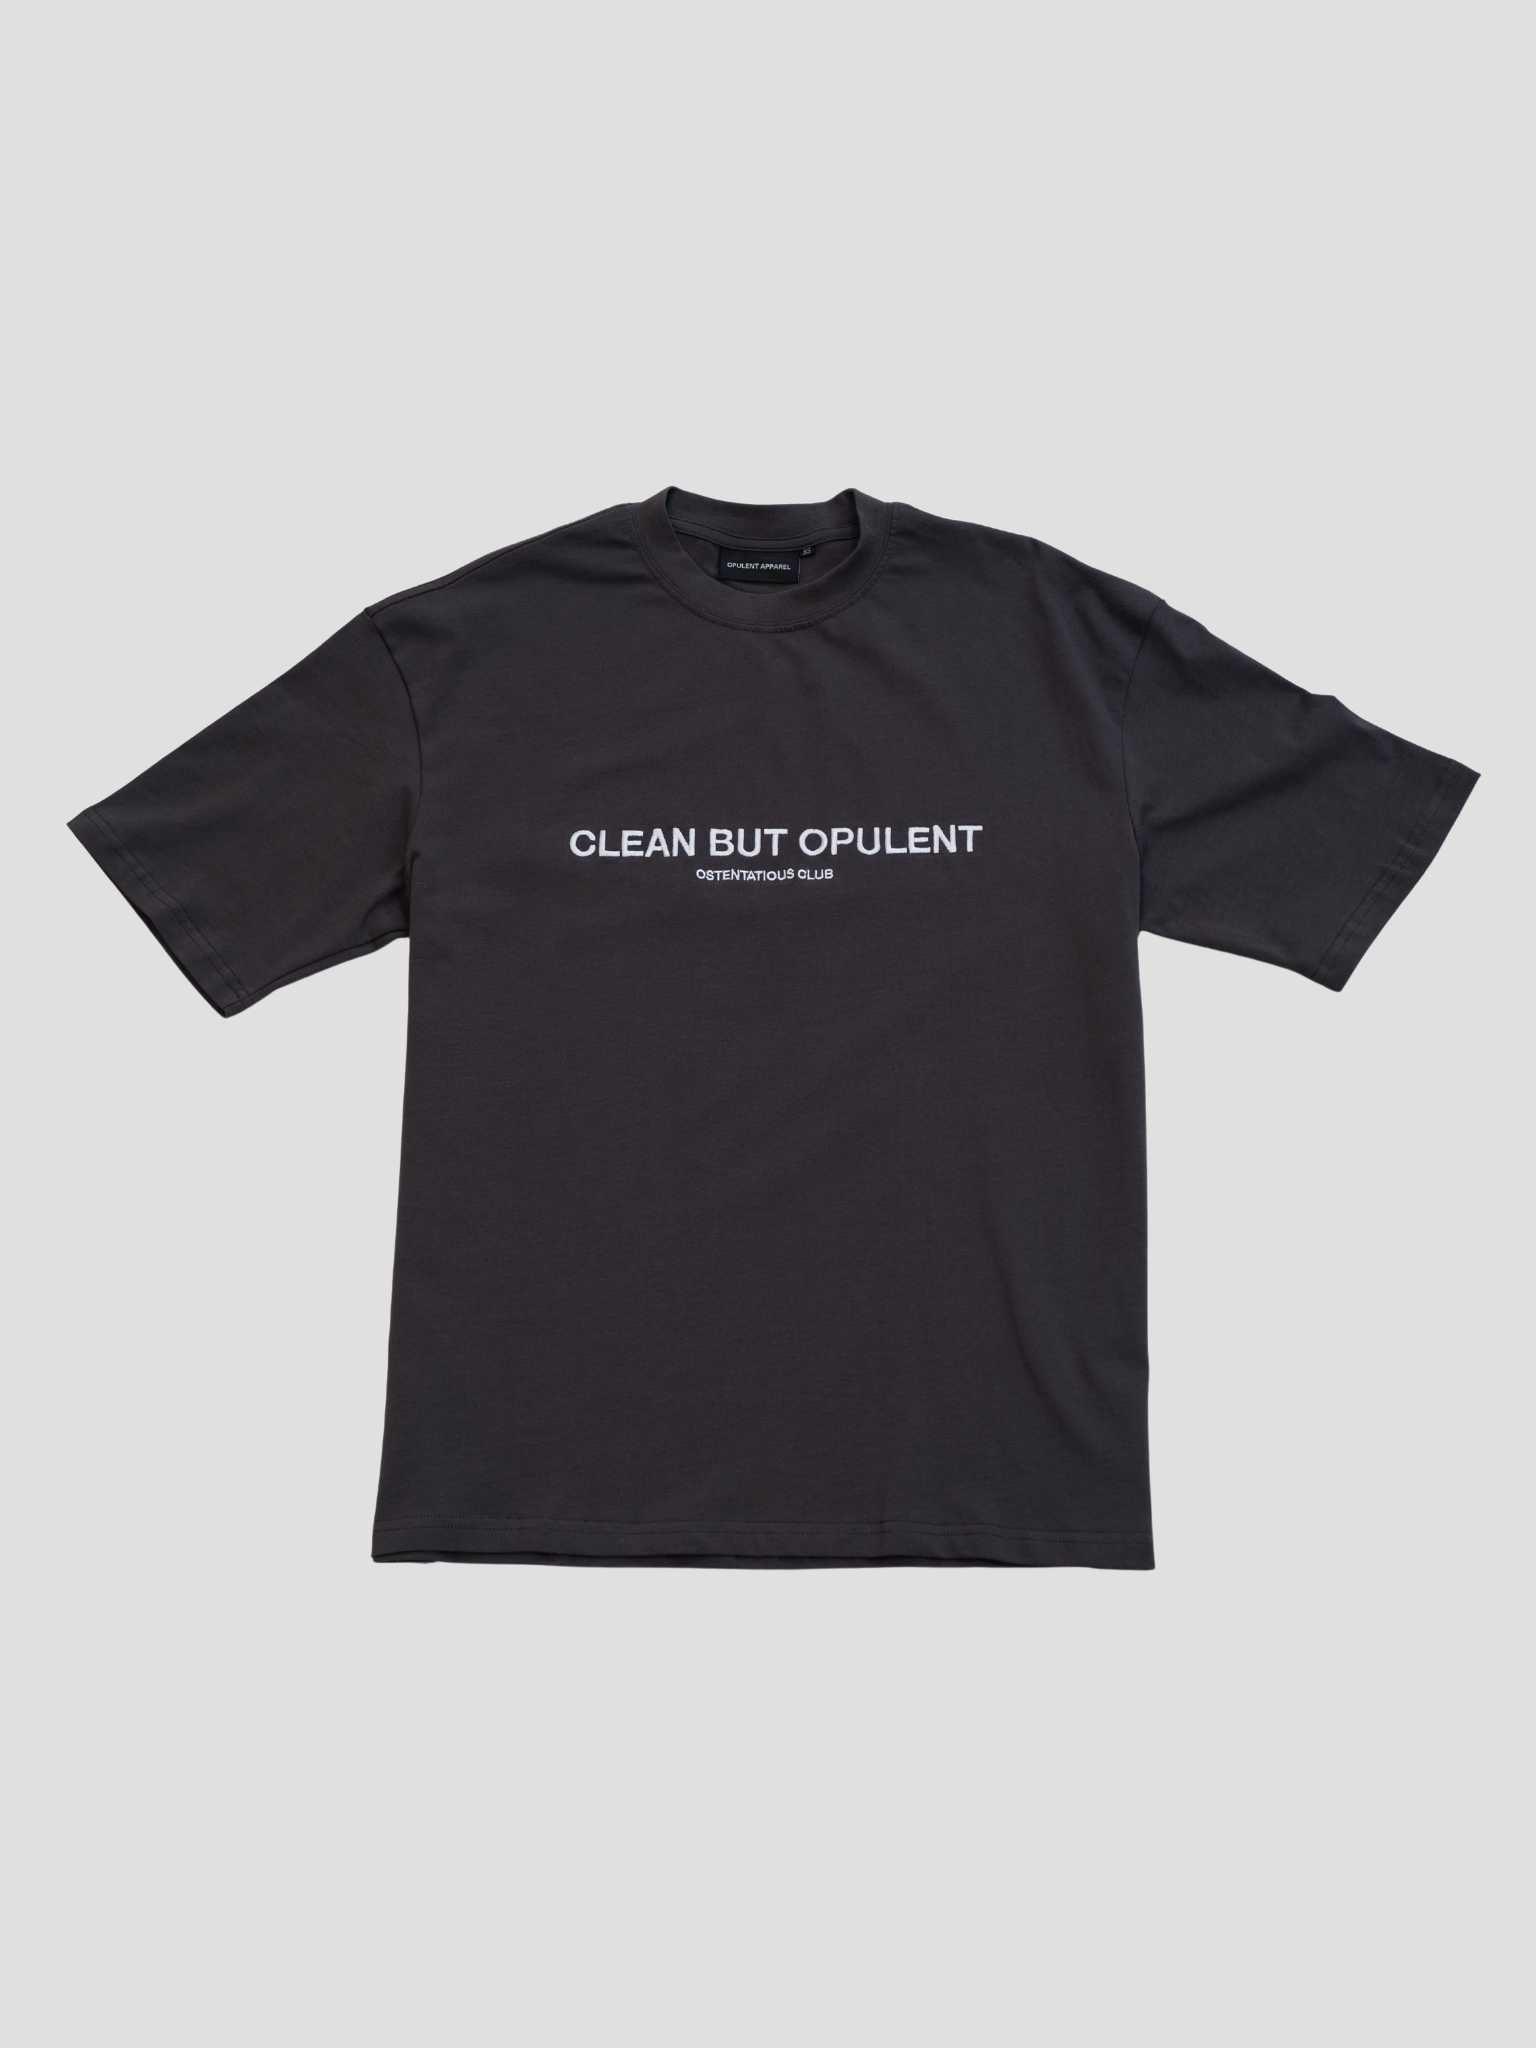 CBO Signature T-Shirt - Charcoal Opulent Apparel